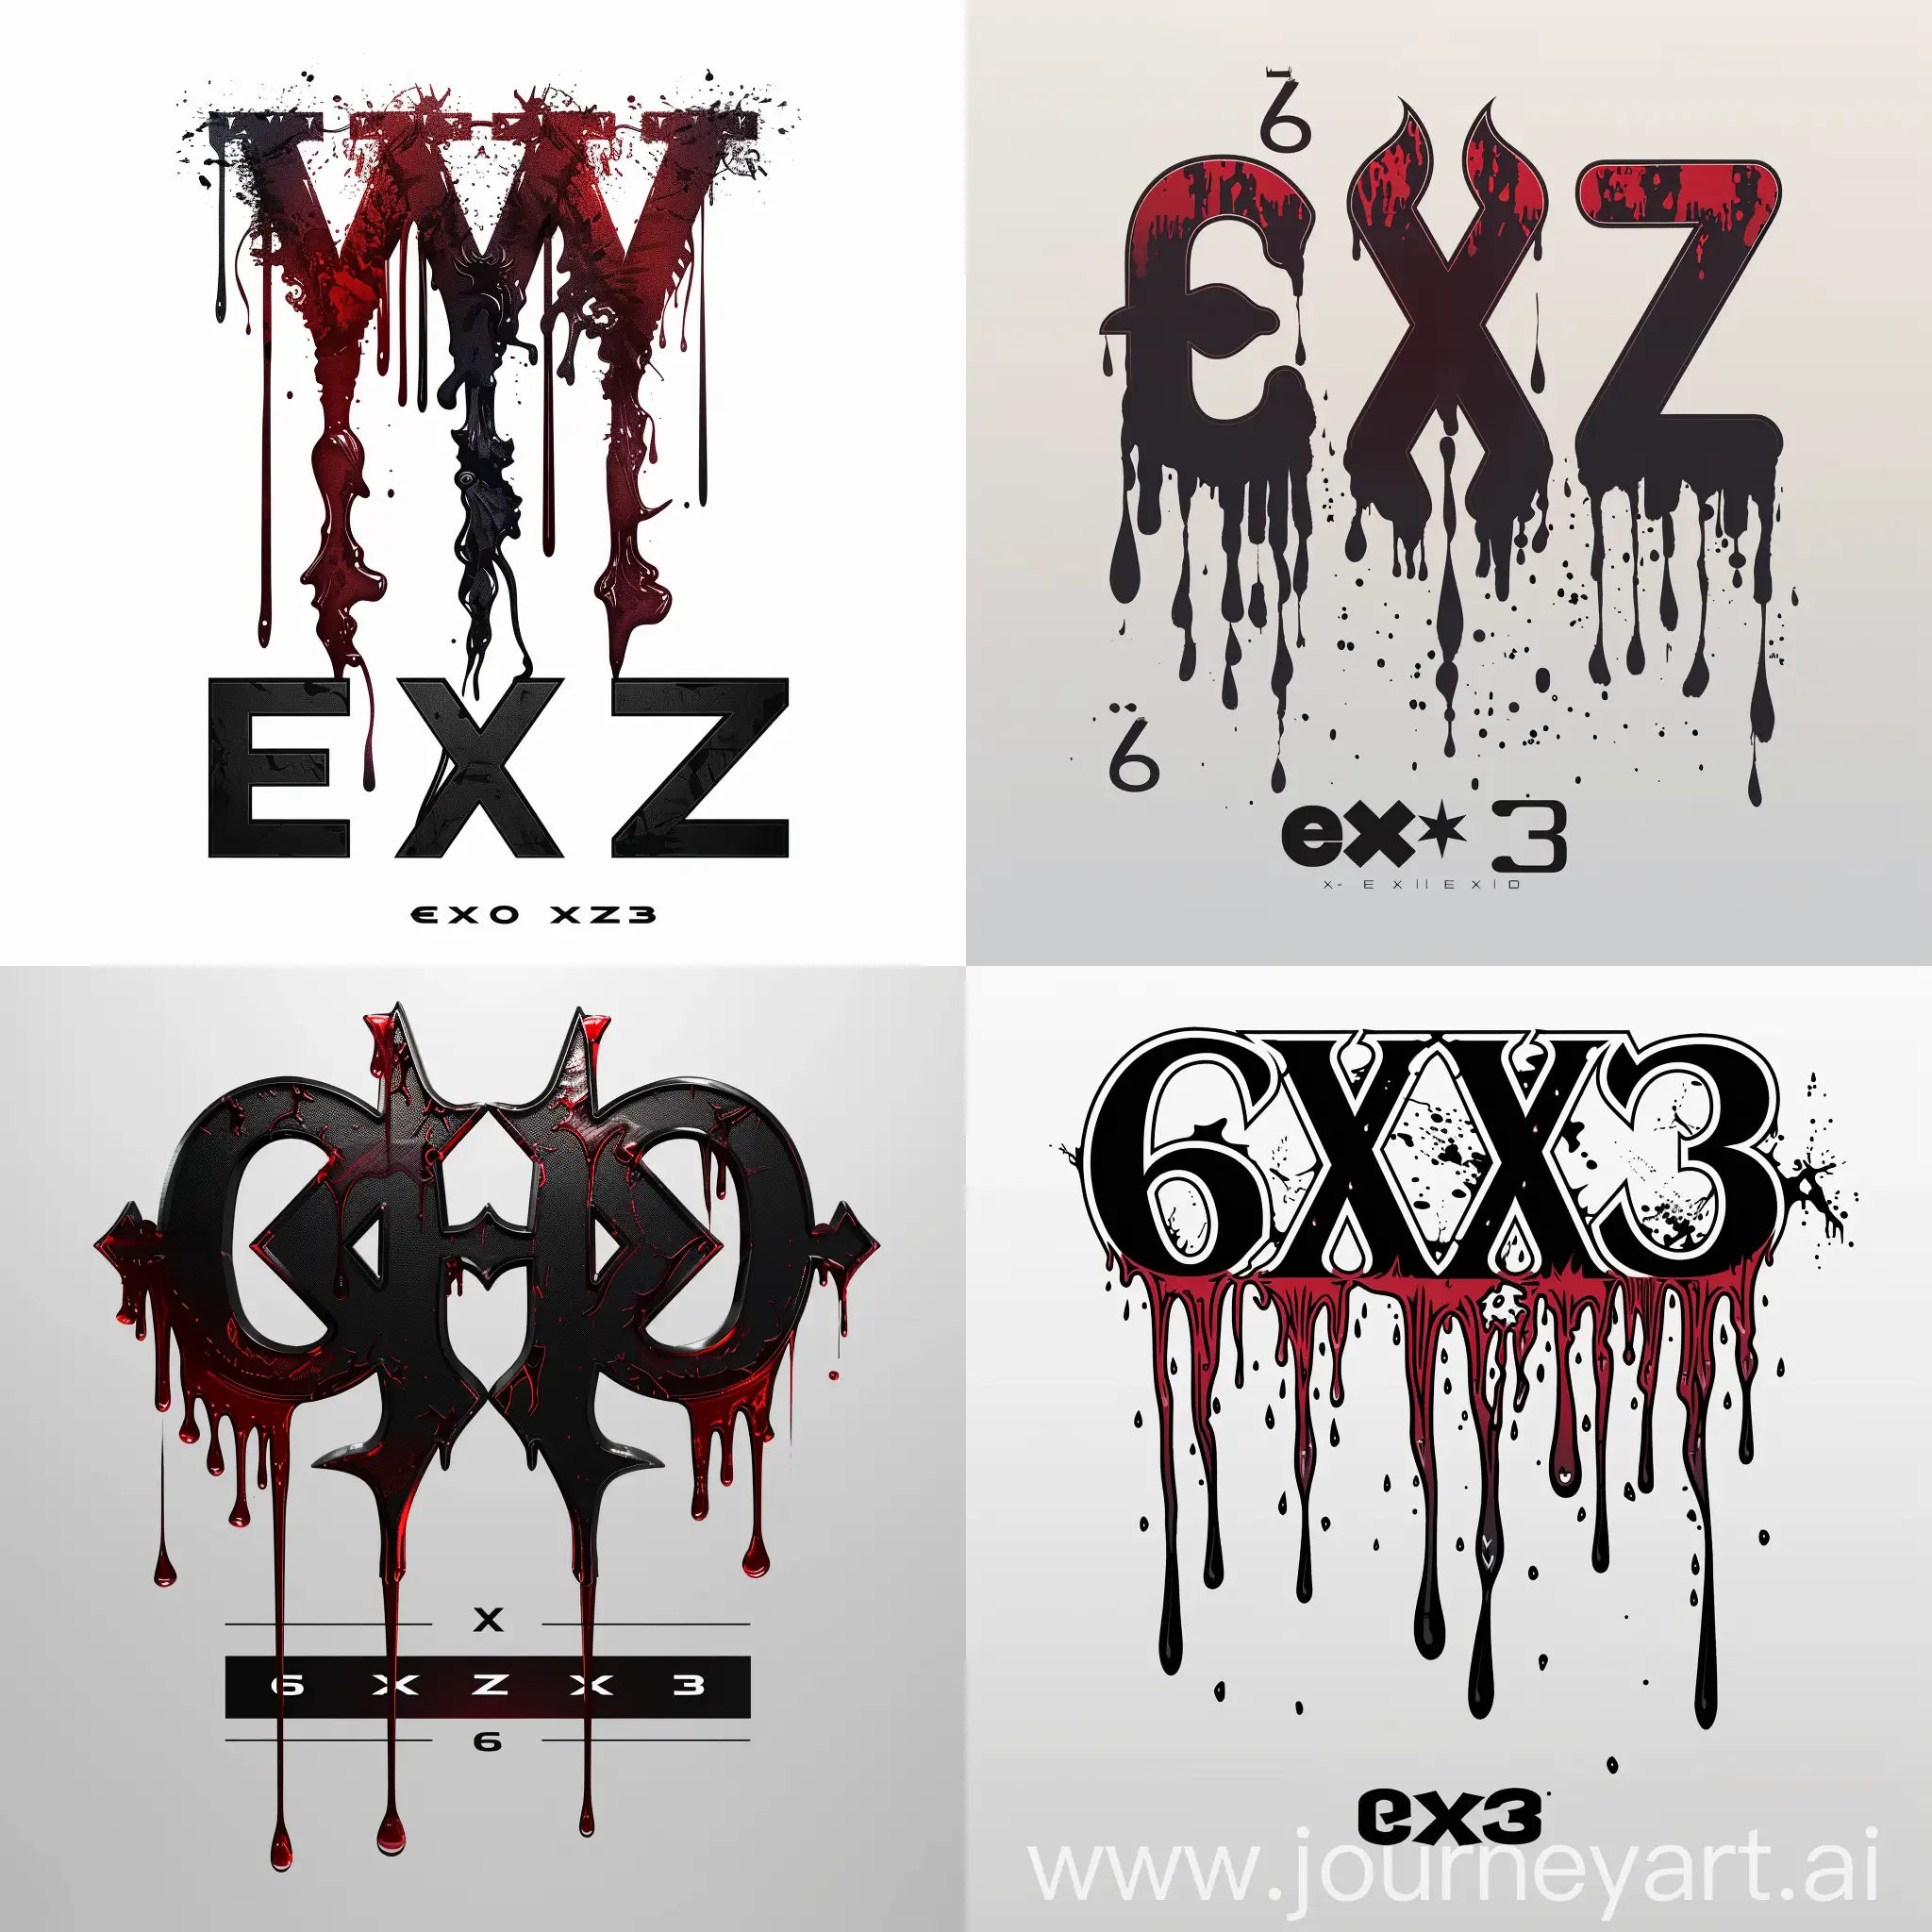 сделай логотип "exz" с этих шестерок течет кровь, и внизу черно-белым градиентом надпись 6 x 3 . Также чтоб какая-то из букв была похожа на сатану